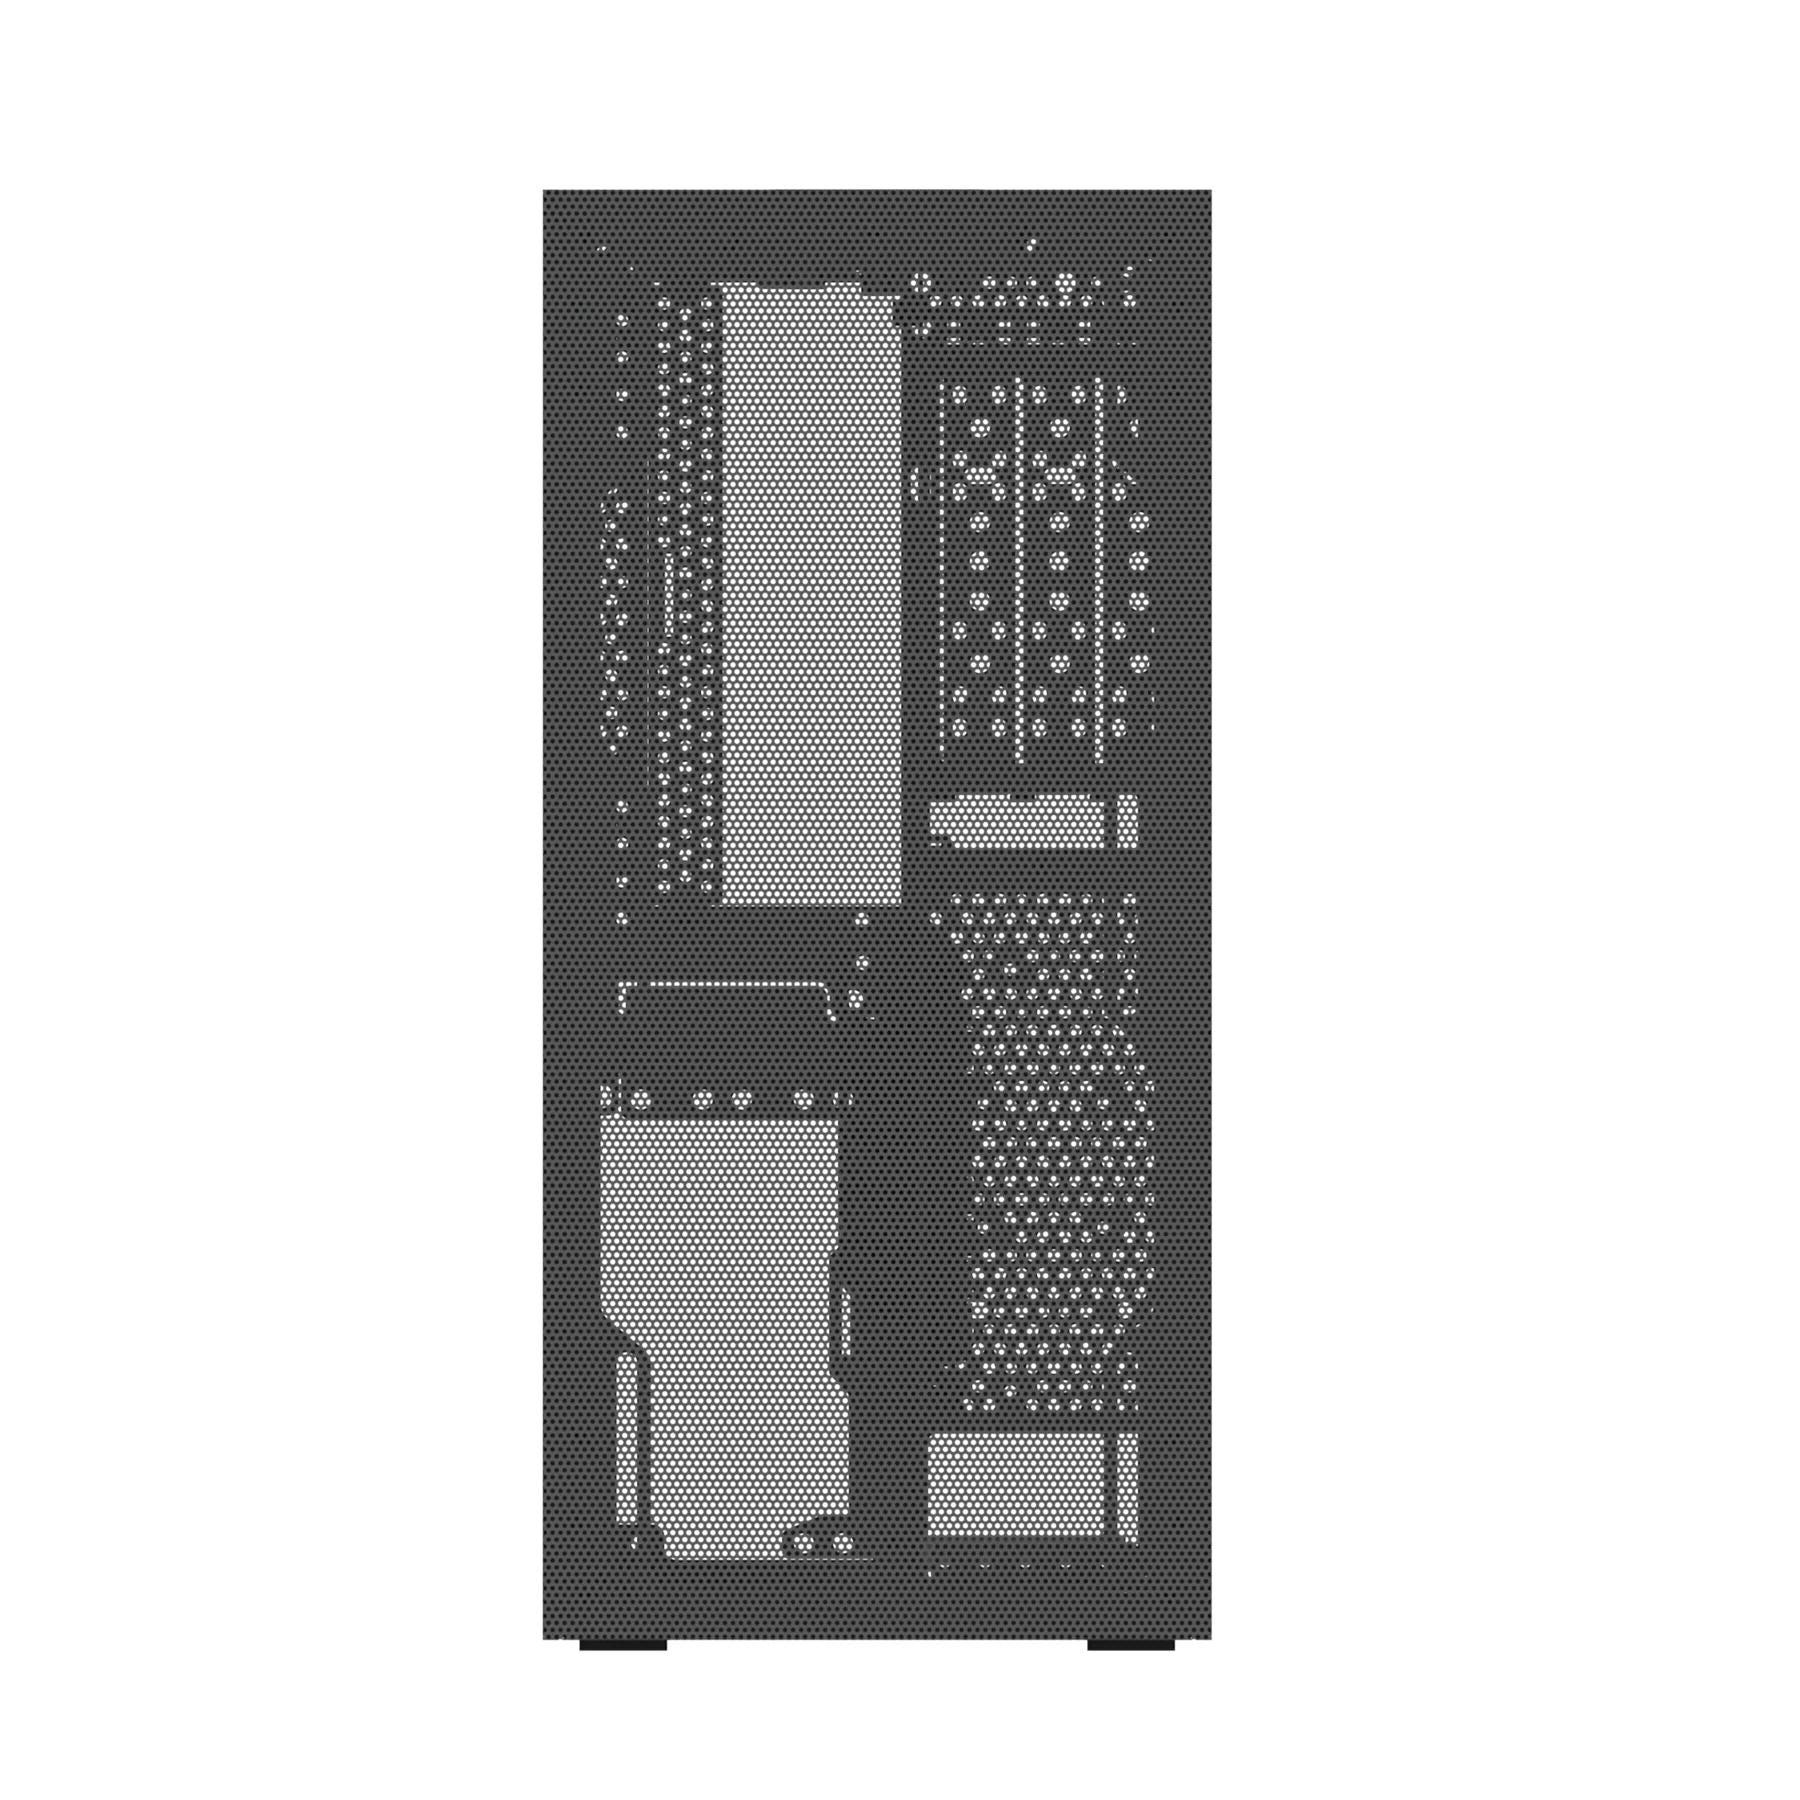 Ssupd MESHROOM S Mesh PCI-E4.0 Mini-ITX Case 機箱